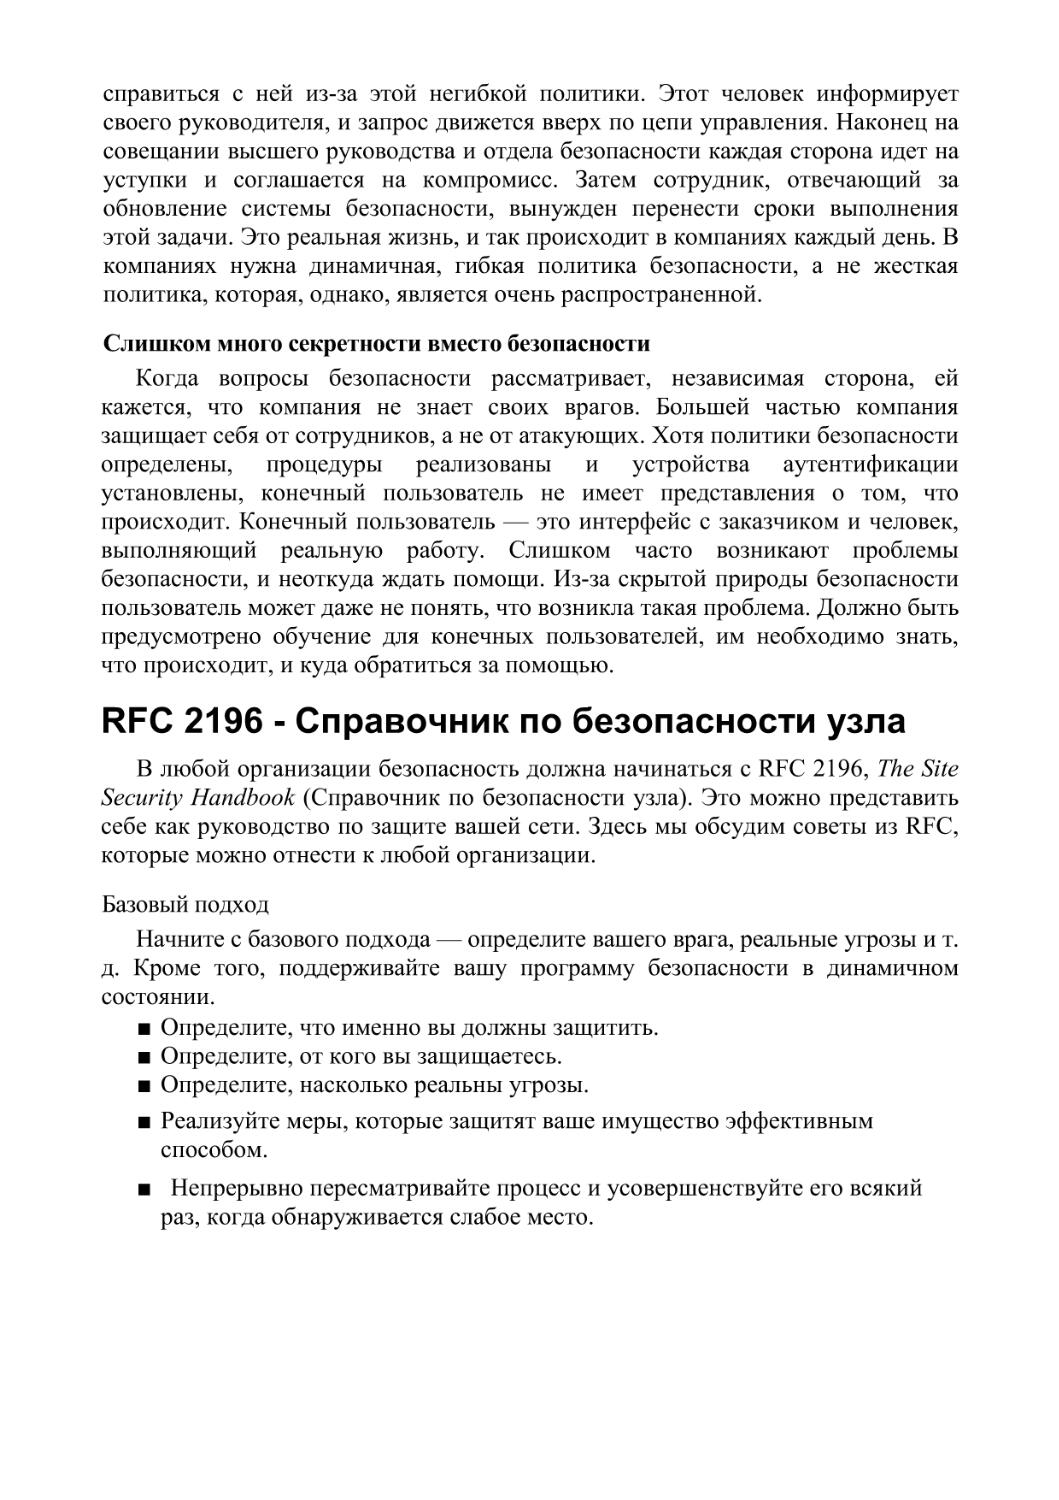 RFC 2196 - Справочник по безопасности узла